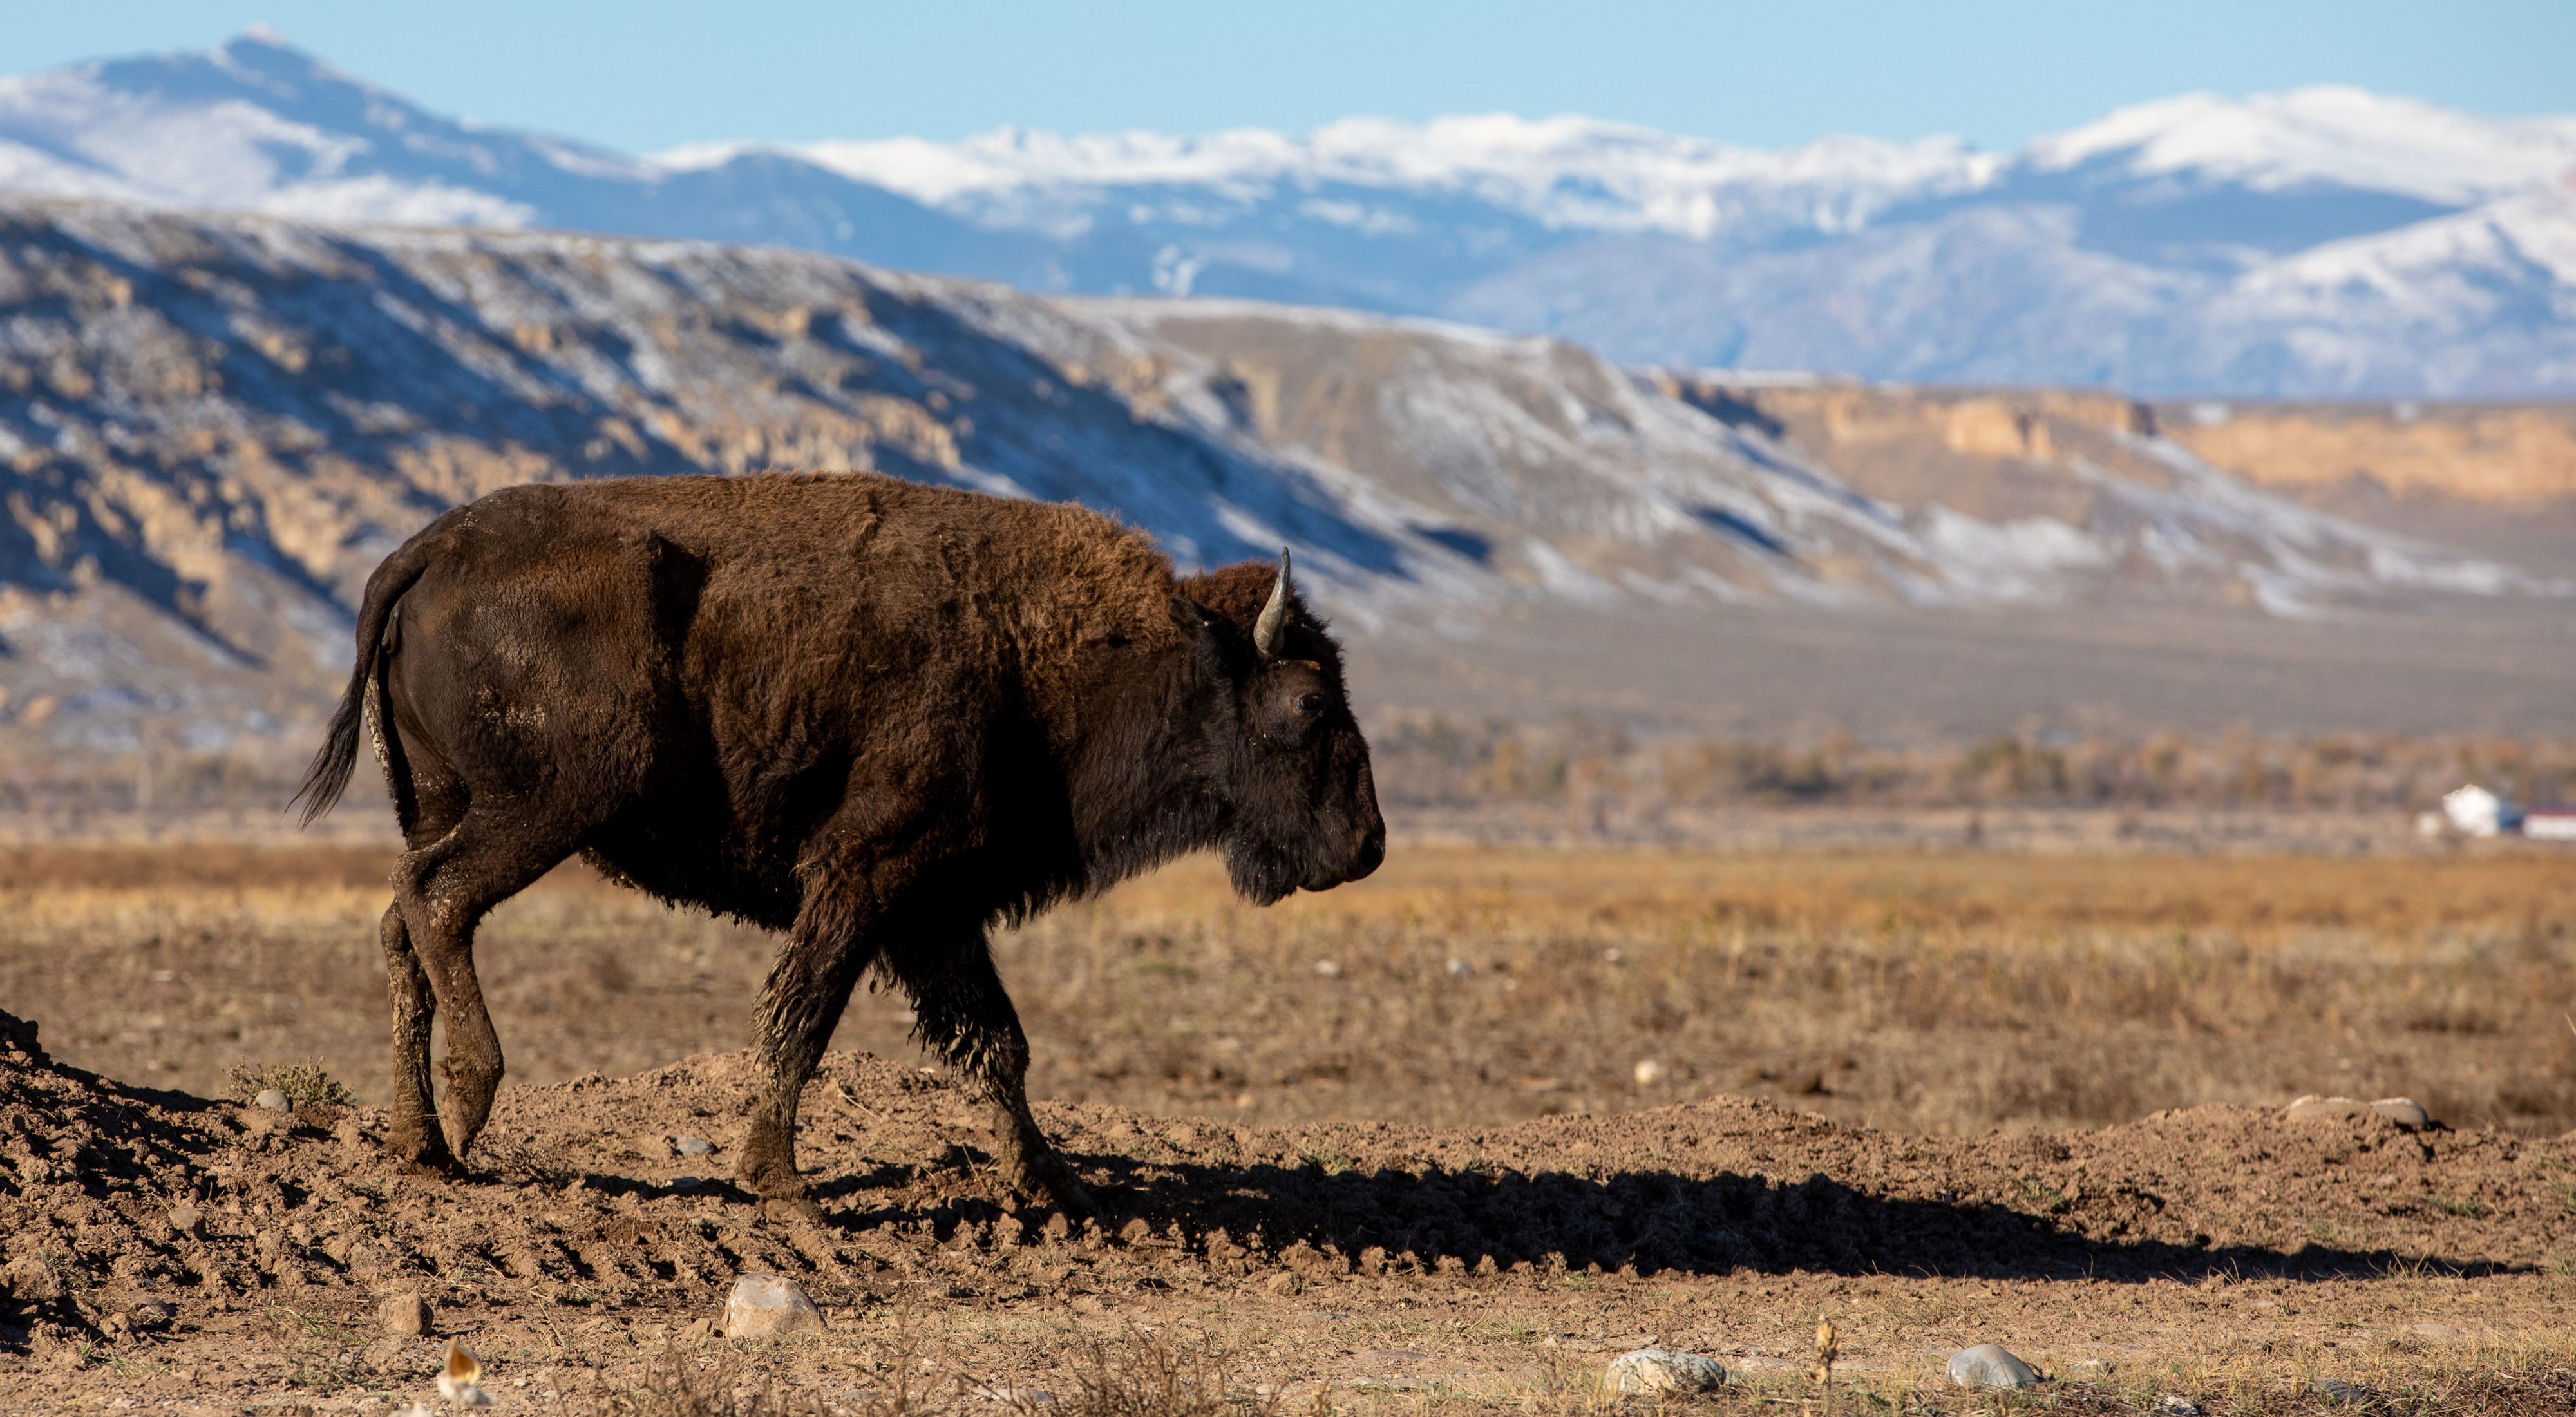 A buffalo walking in a Wyoming field.